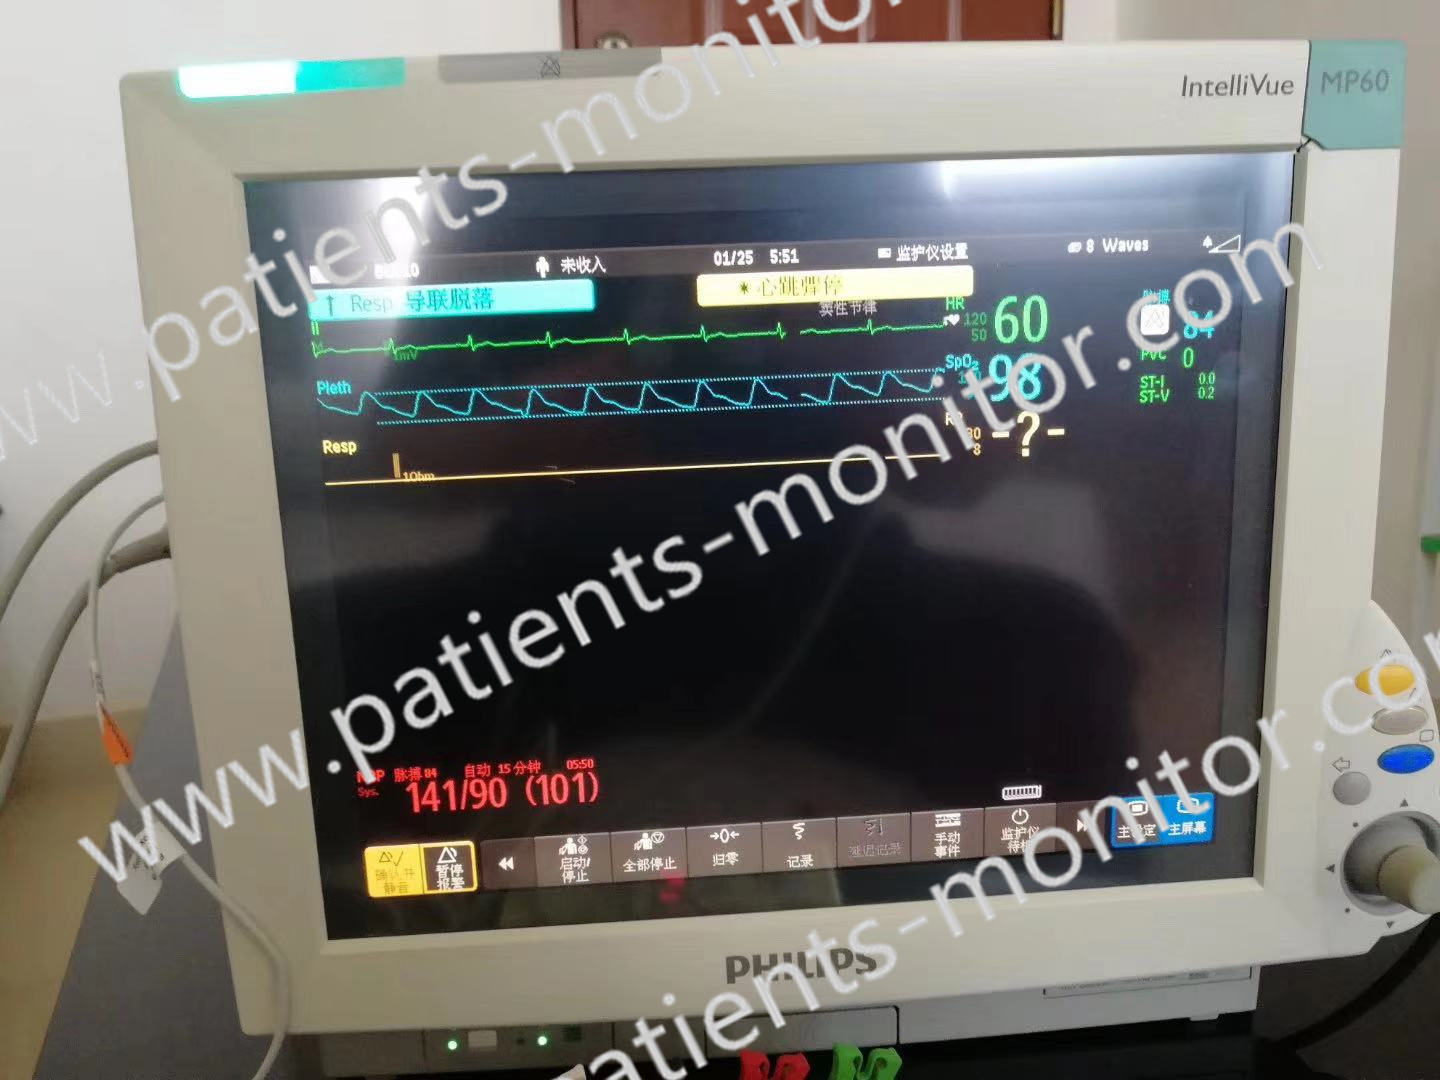 Philip IntelliVue MP60 M8005A ชิ้นส่วนตรวจสอบผู้ป่วย อุปกรณ์ทางการแพทย์สำหรับคลินิกโรงพยาบาล